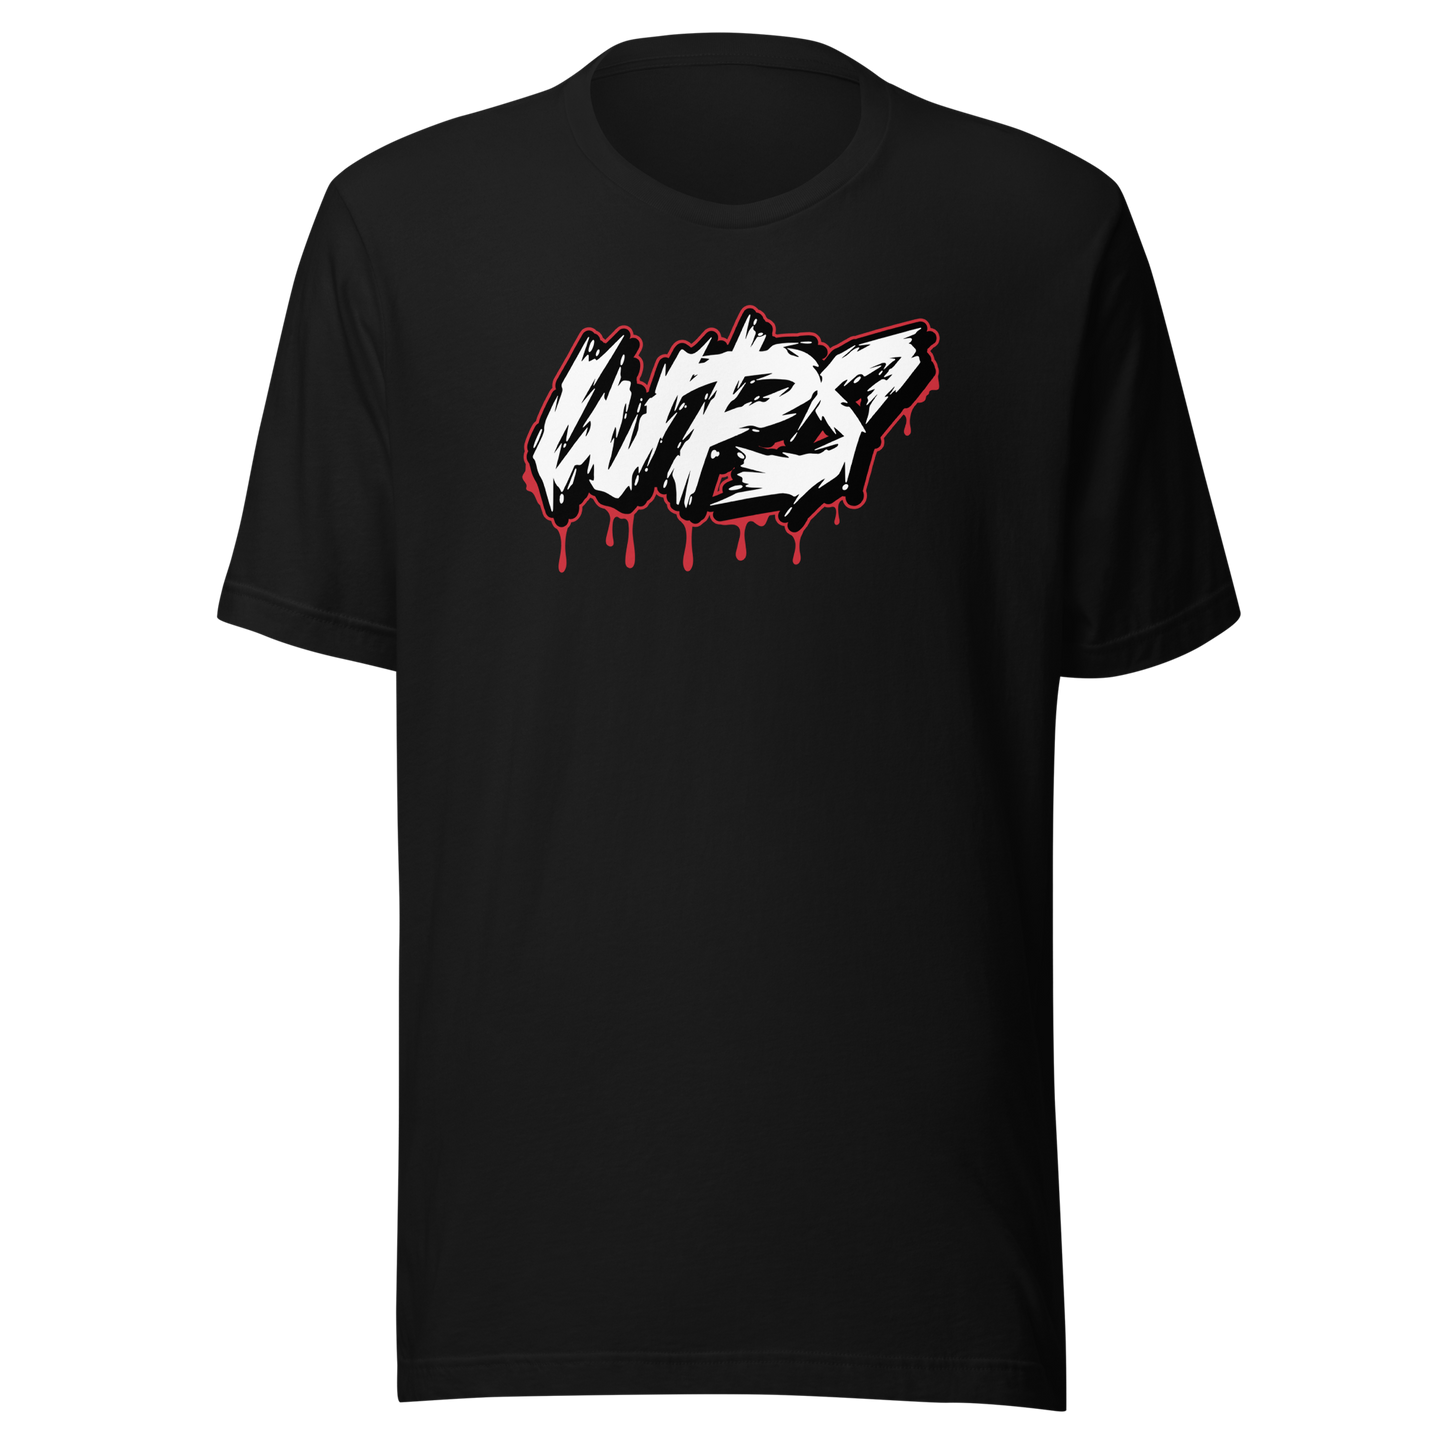 WPS T-Shirt